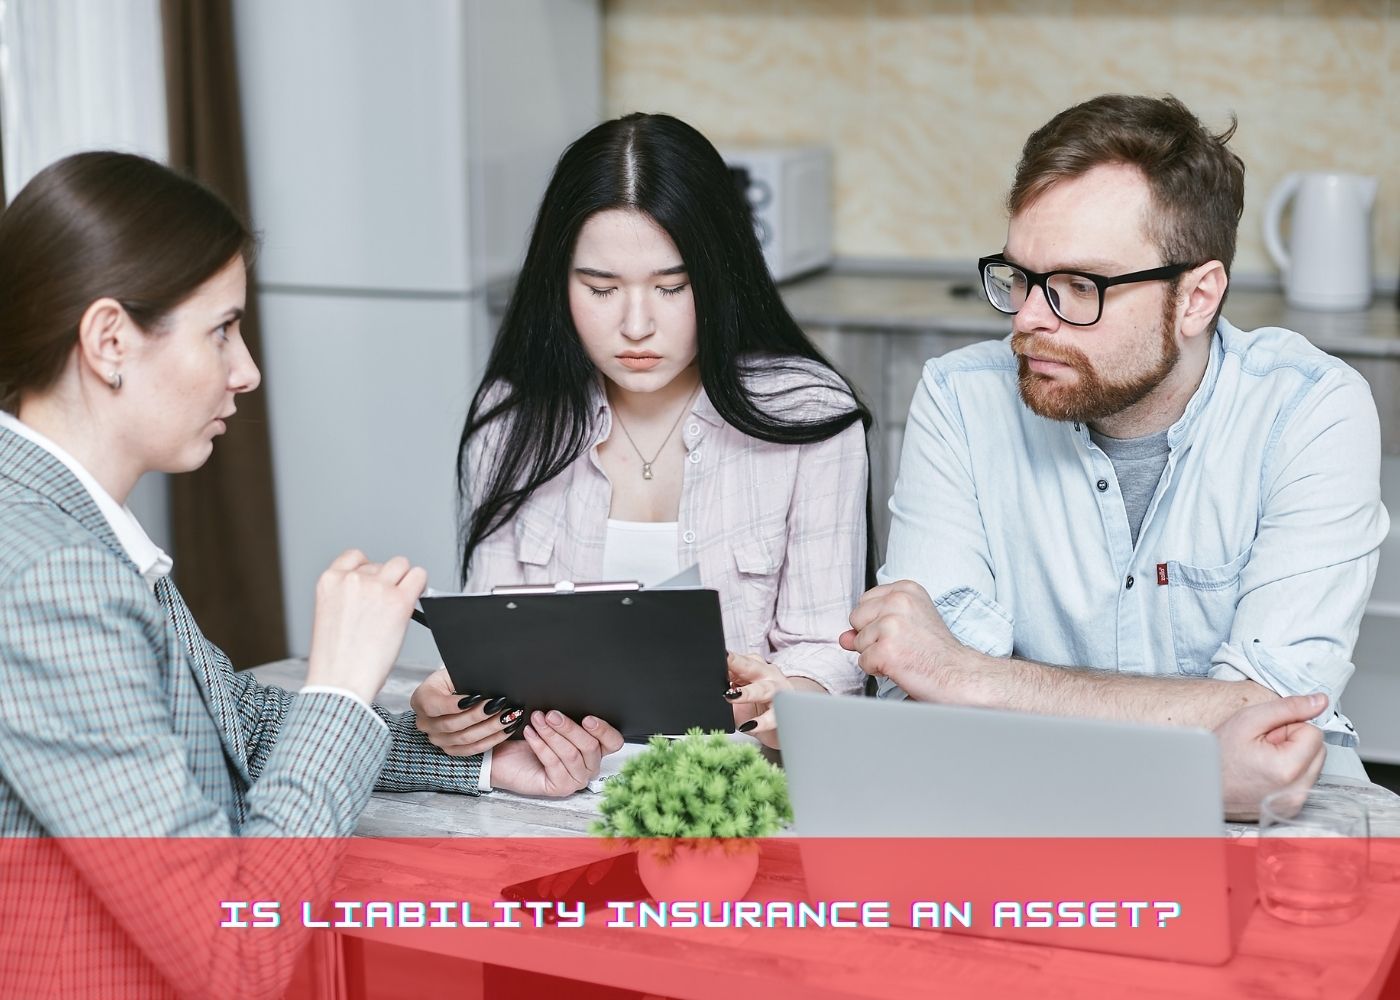 Is liability insurance an asset?